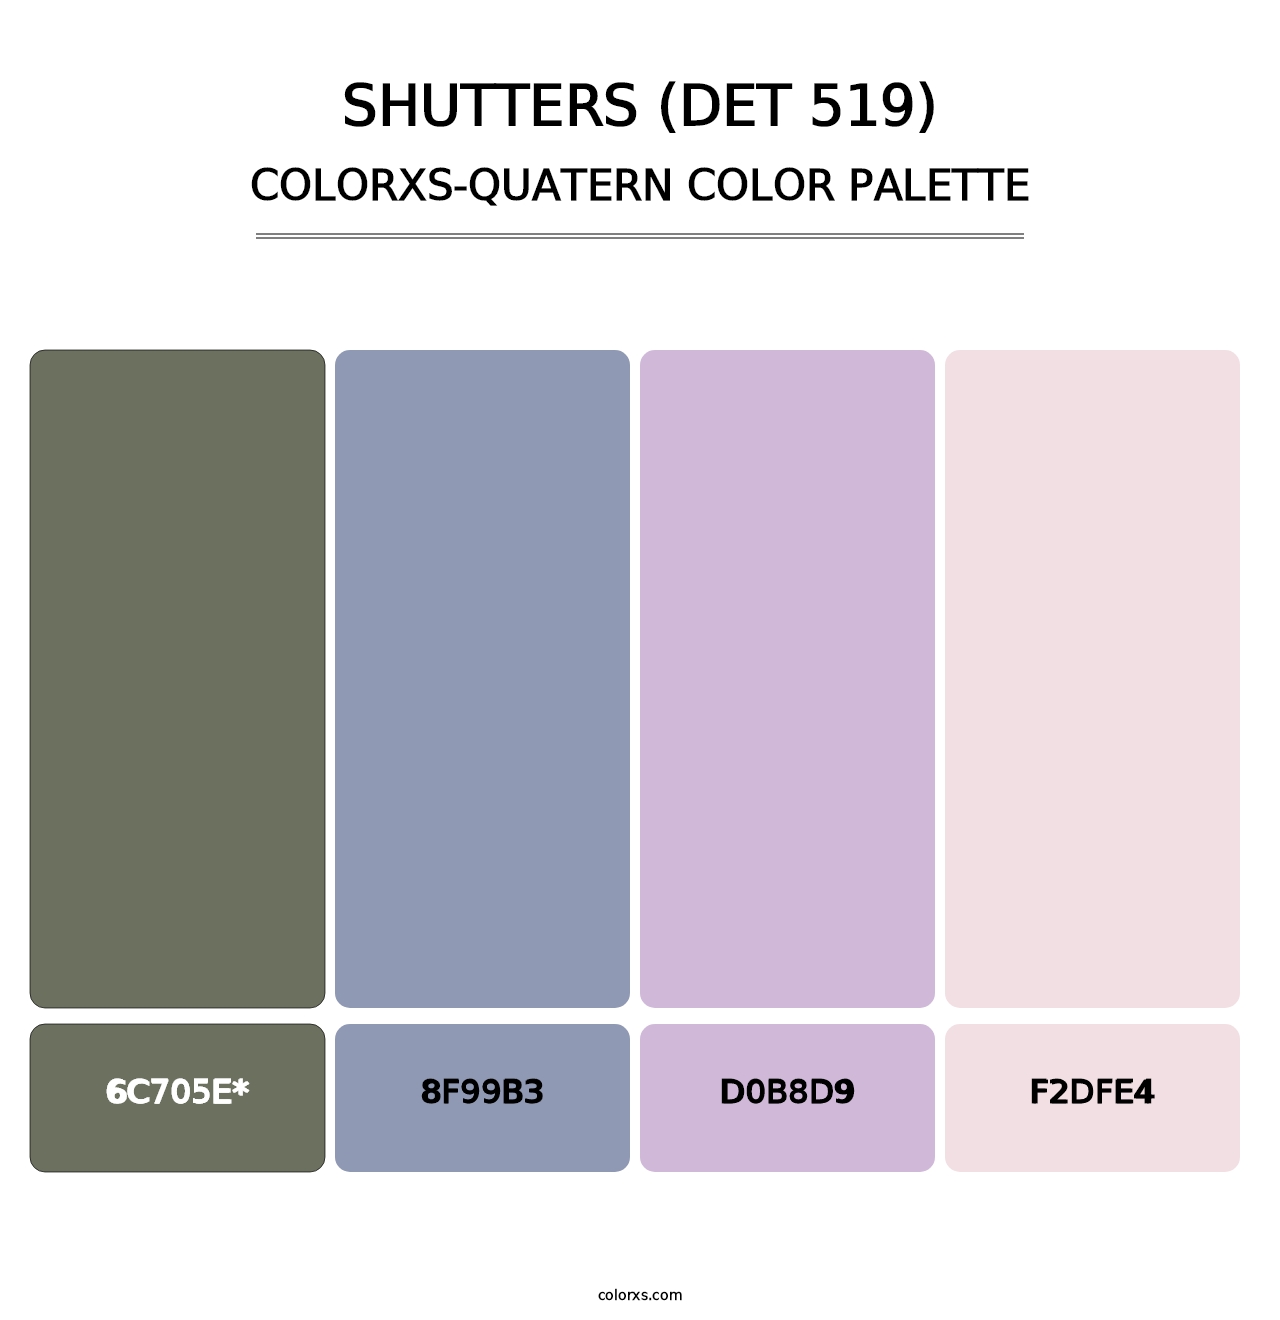 Shutters (DET 519) - Colorxs Quatern Palette